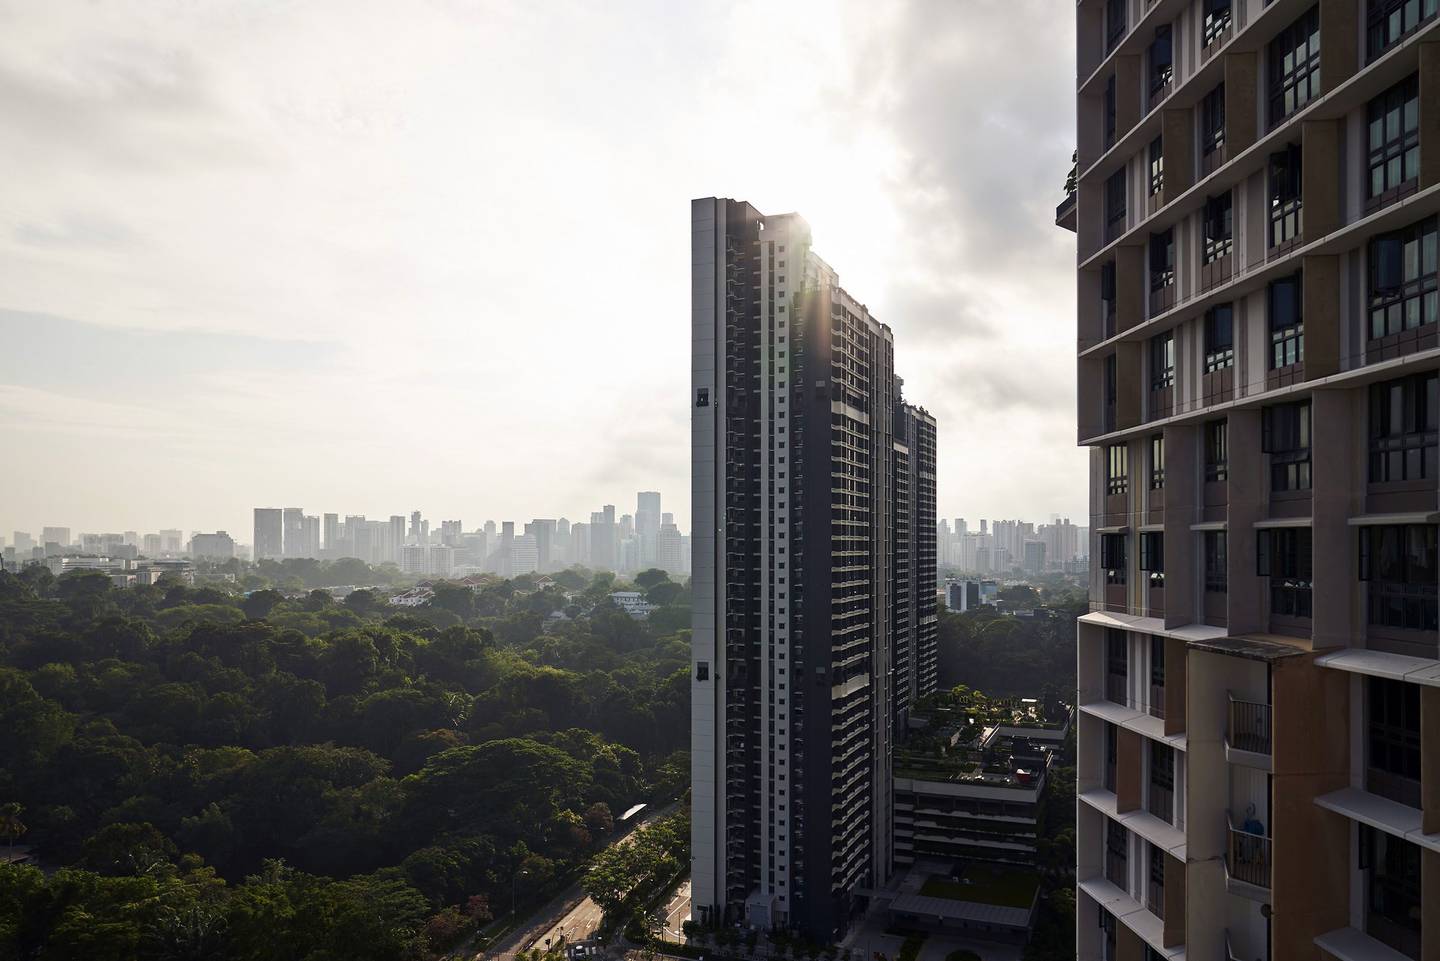 Las viviendas construidas por el gobierno de Singapur se parecen poco a las concentraciones urbanas de bajos ingresos de otros lugares. Fotógrafo: Lauryn Ishak/Bloomberg